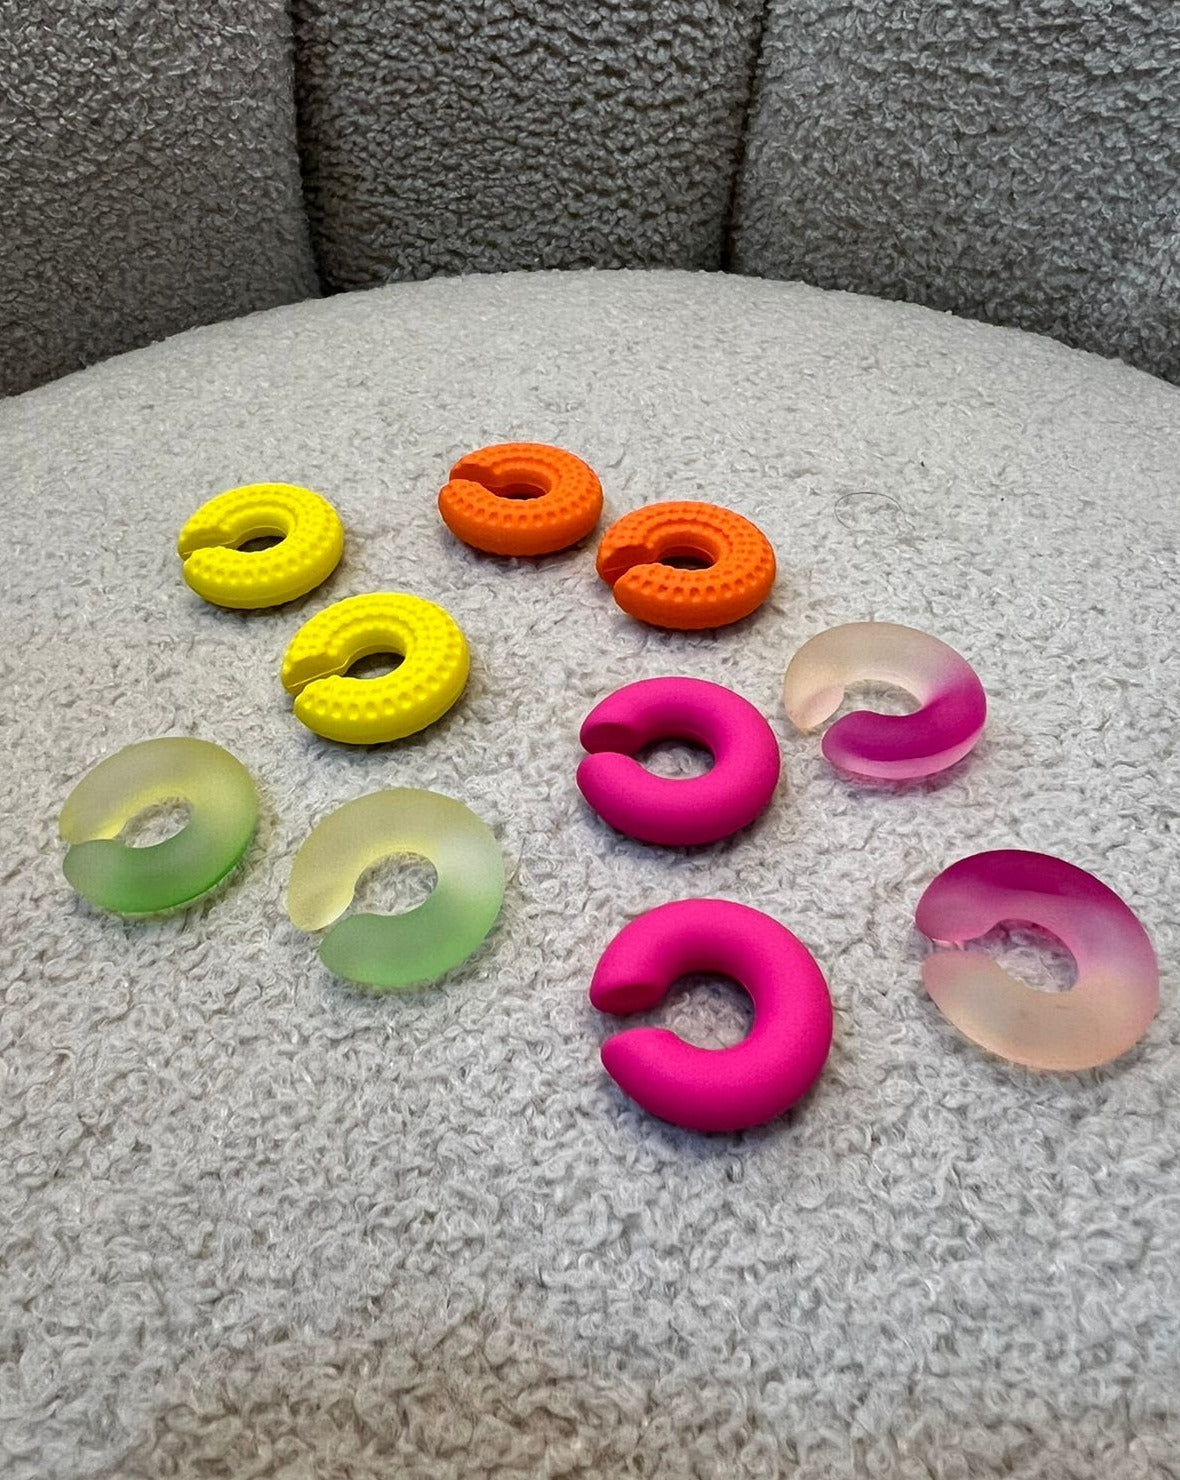 Accesorios de silicona multicolor para orejas, disponibles en colores amarillo, naranja, rosa, verde y transparente, diseñados para ofrecer comodidad y protección.